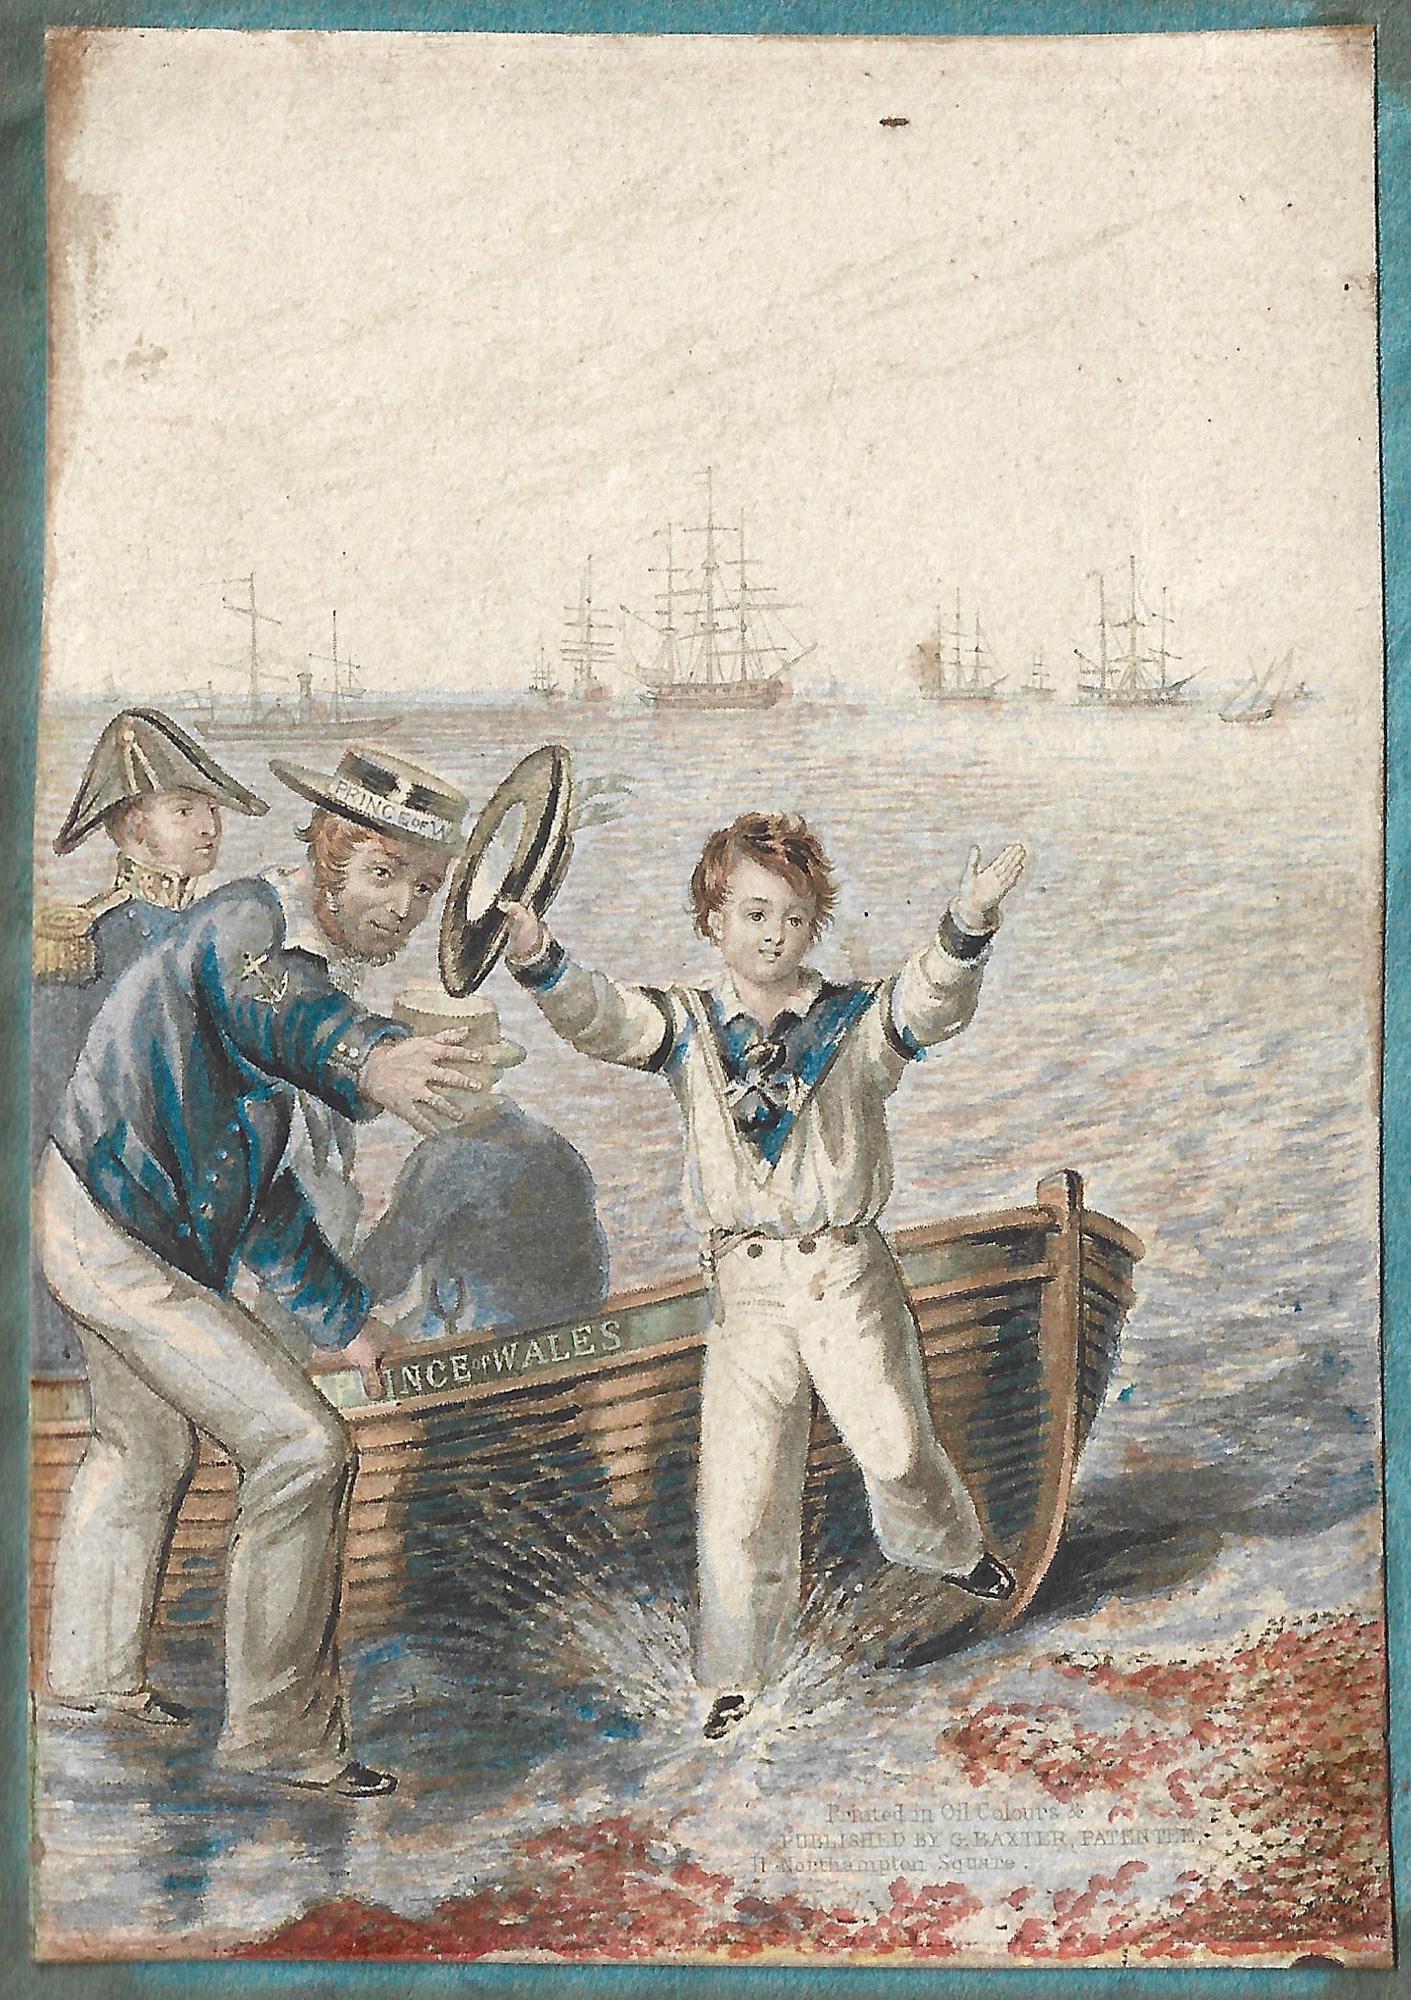 George Baxter Figurative Print – The Prince of Wales bei der Landung von seinem Boot aus